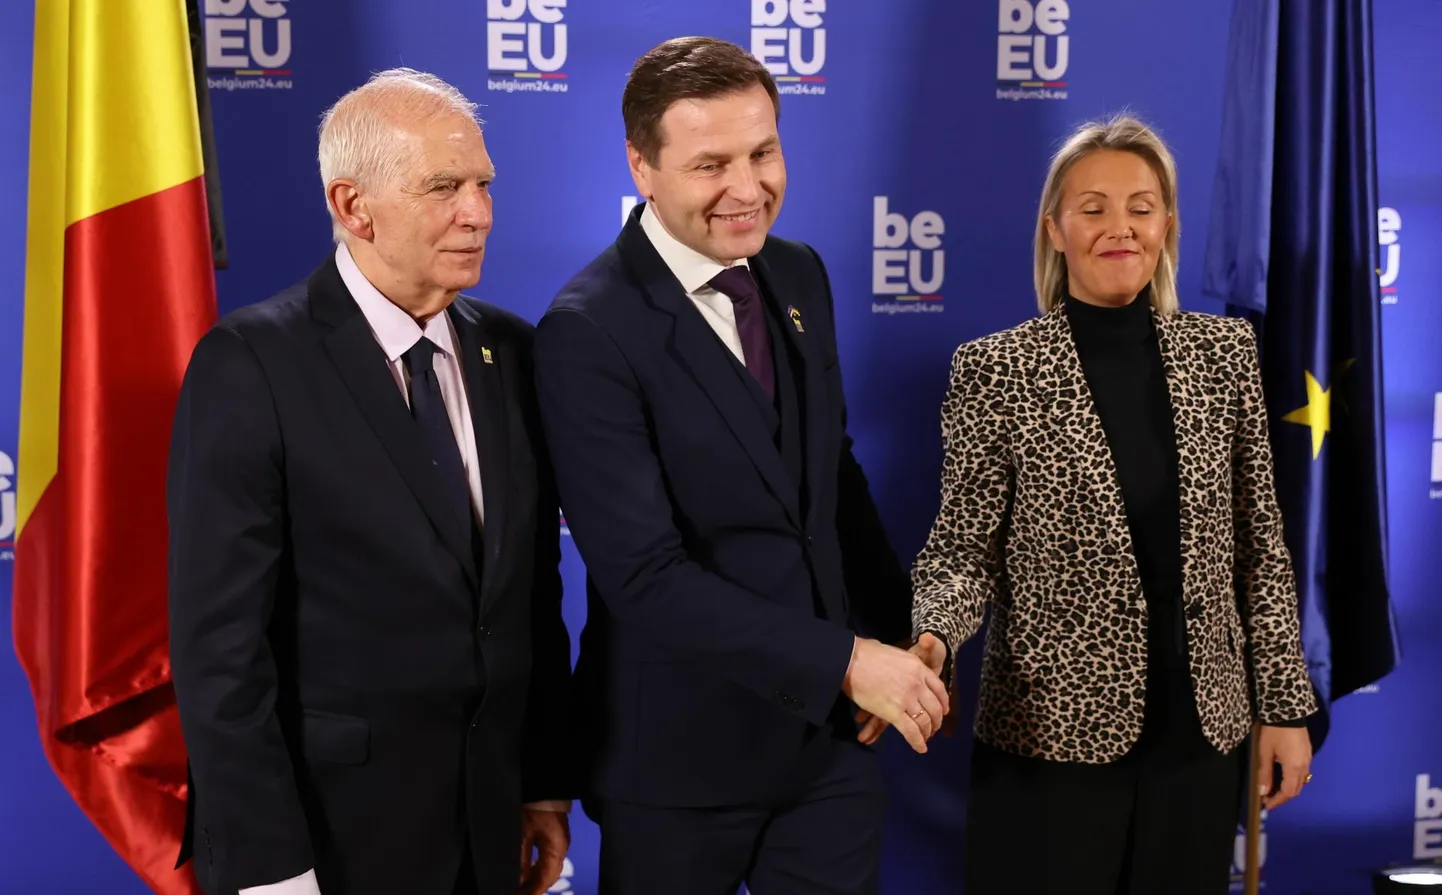 ELi kõrge esindaja Josep Borrell, kaitseminister Hanno Pevkur ja tema kolleeg Ludivine Dedonder praegusest eesistujariigist Belgiast eile Brüsselis.